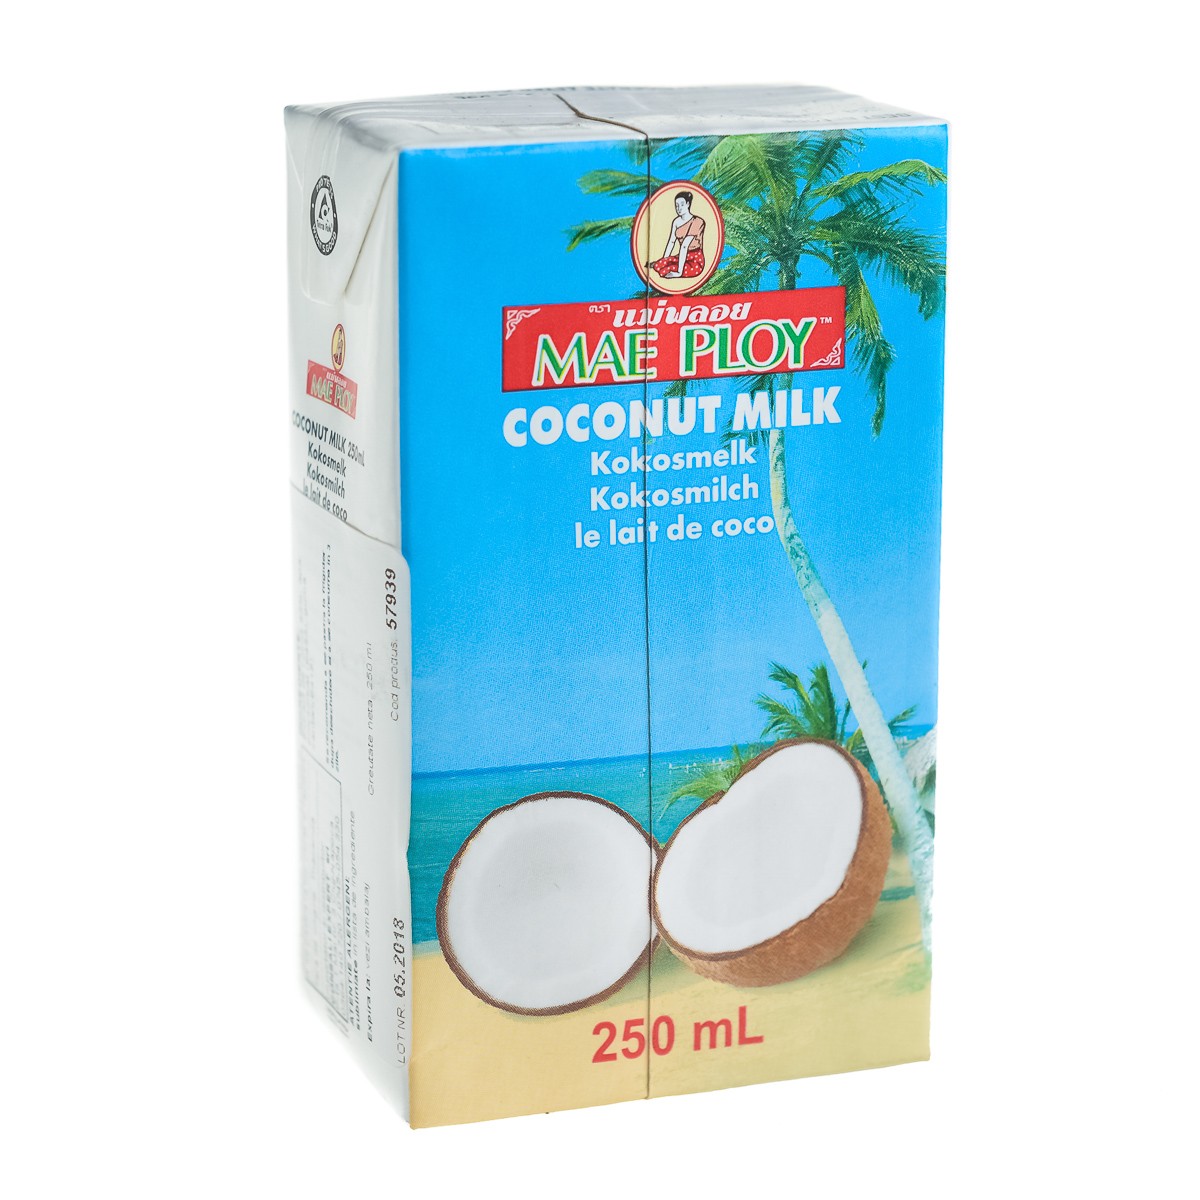 Lapte de cocos - Lapte de cocos MAE PLOY 250ml, asianfood.ro